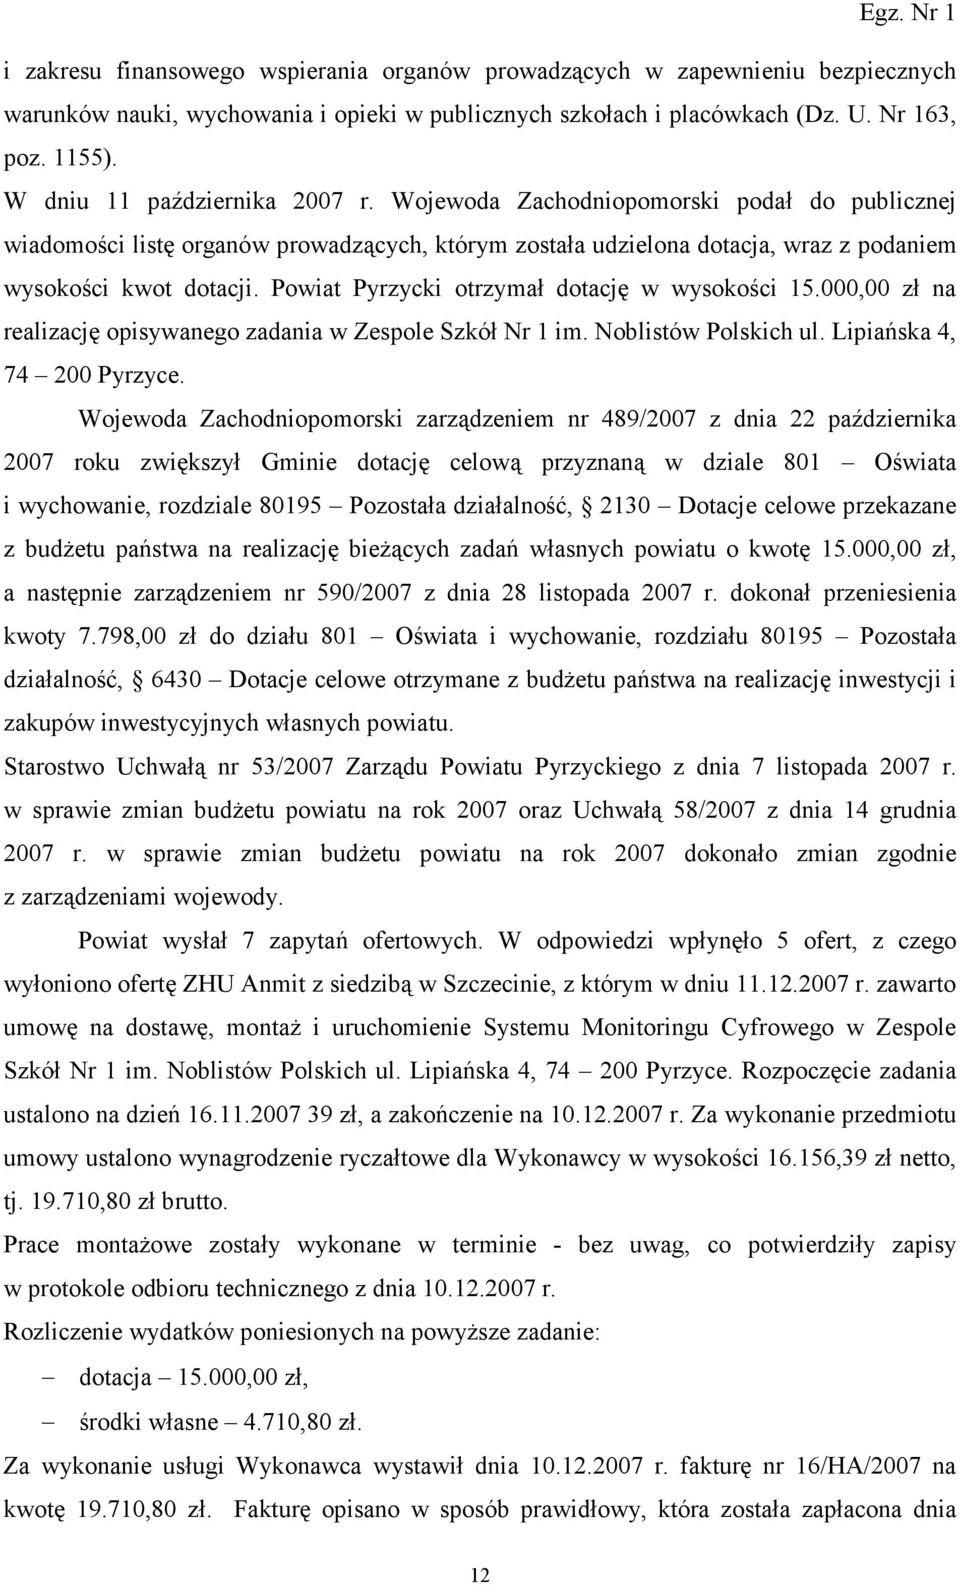 Powiat Pyrzycki otrzymał dotację w wysokości 15.000,00 zł na realizację opisywanego zadania w Zespole Szkół Nr 1 im. Noblistów Polskich ul. Lipiańska 4, 74 200 Pyrzyce.